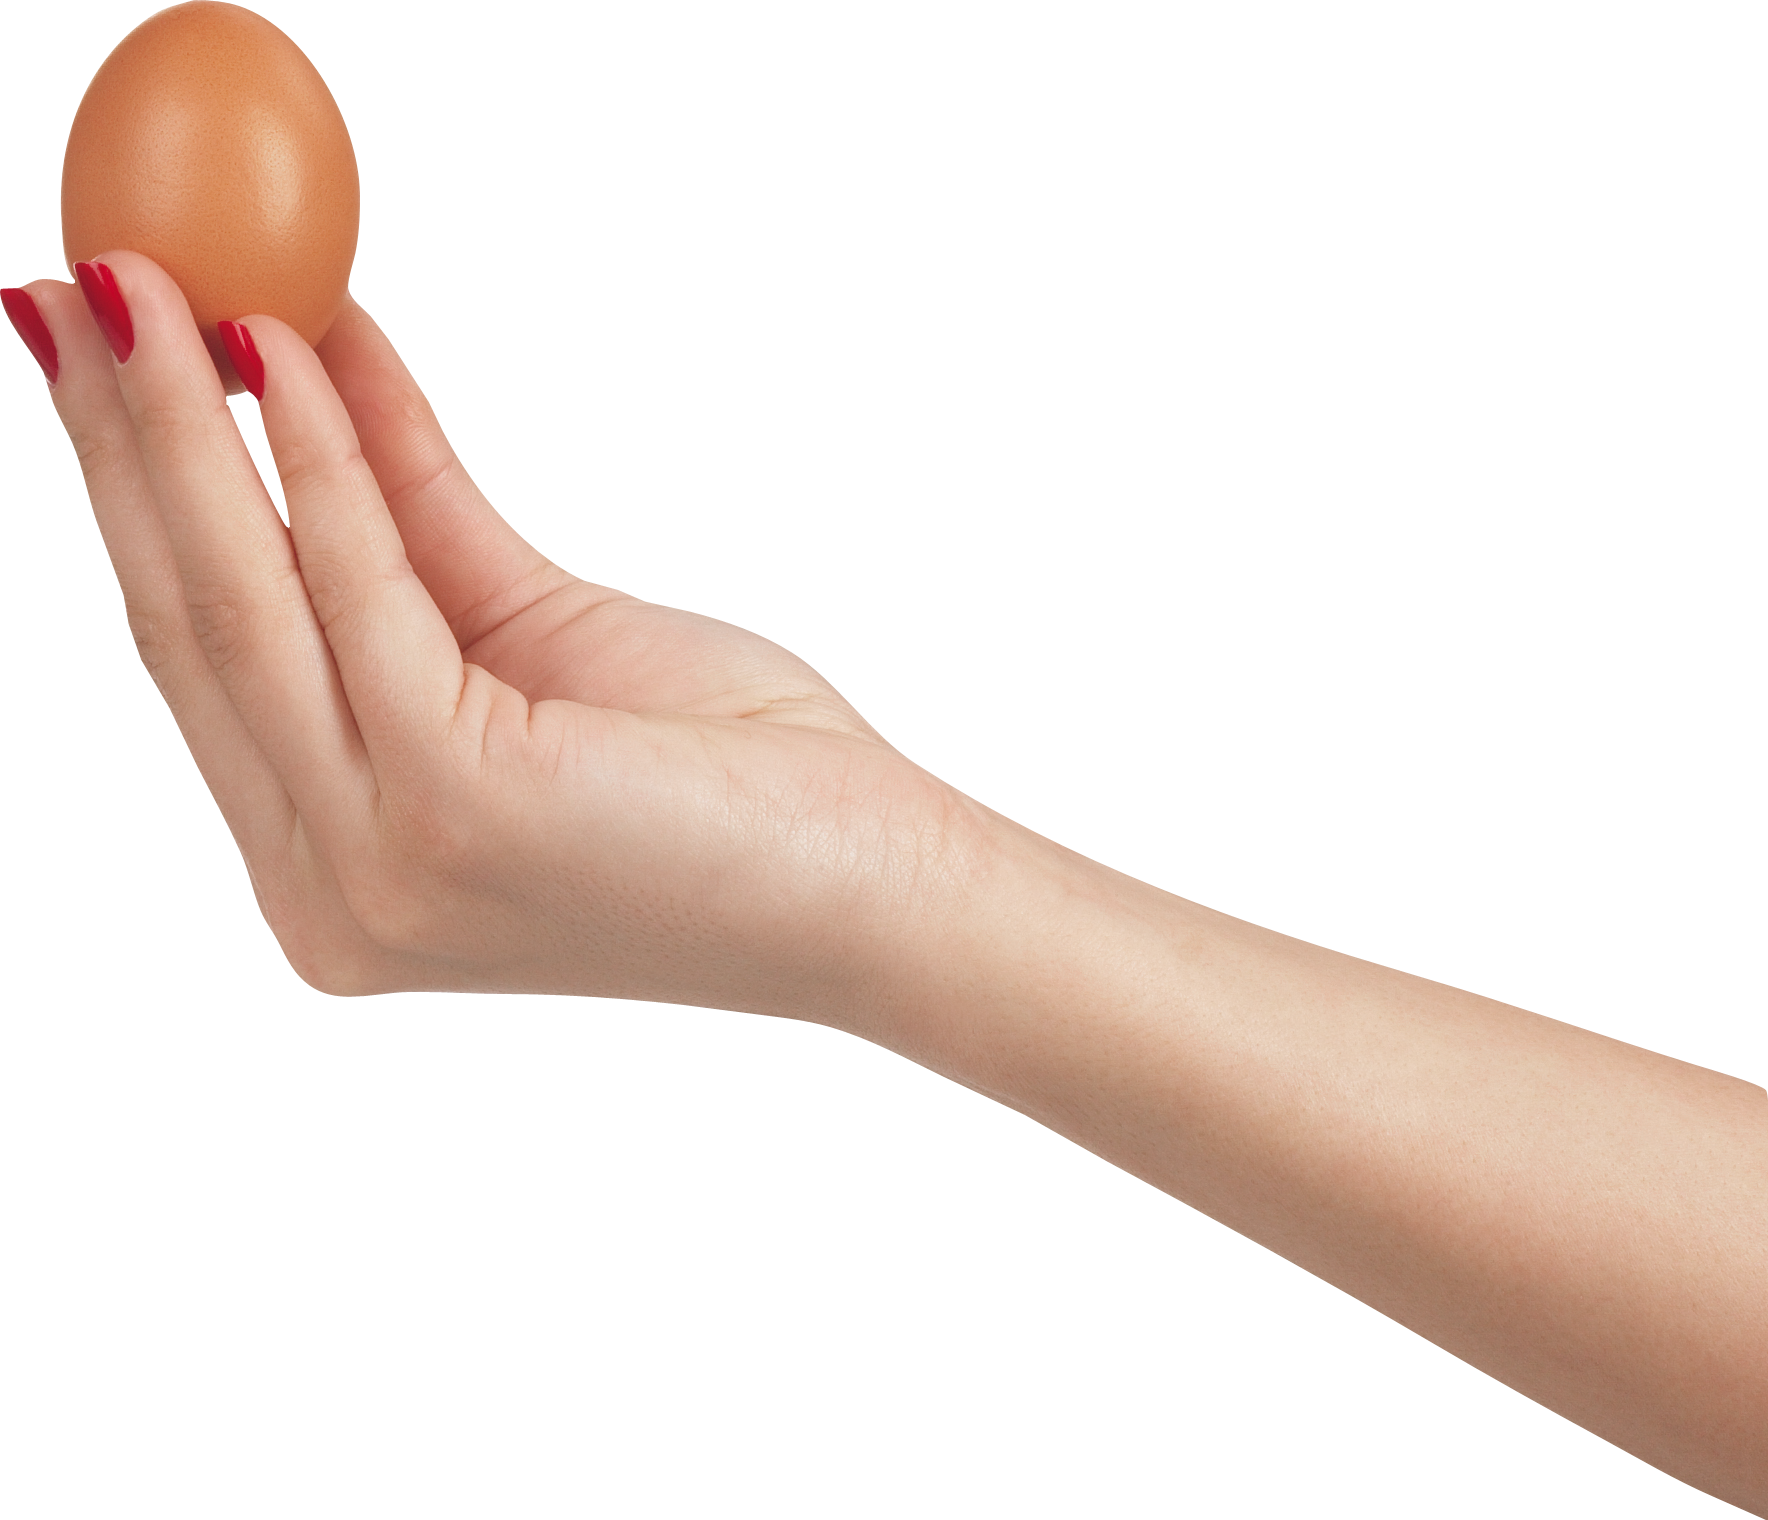 हाथ में अंडा